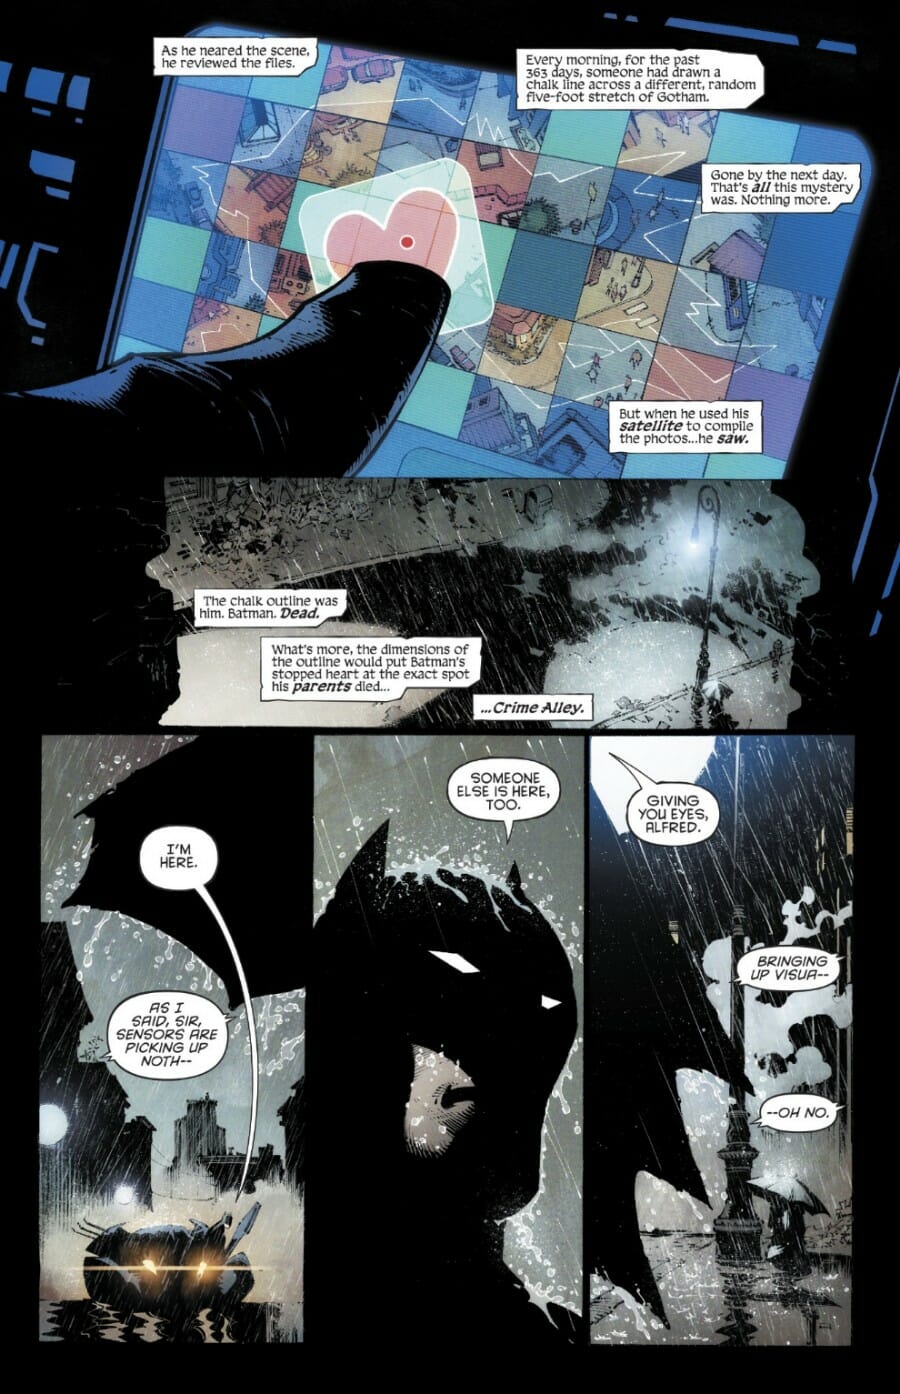 Batman Last Knight On Earth Wallpapers